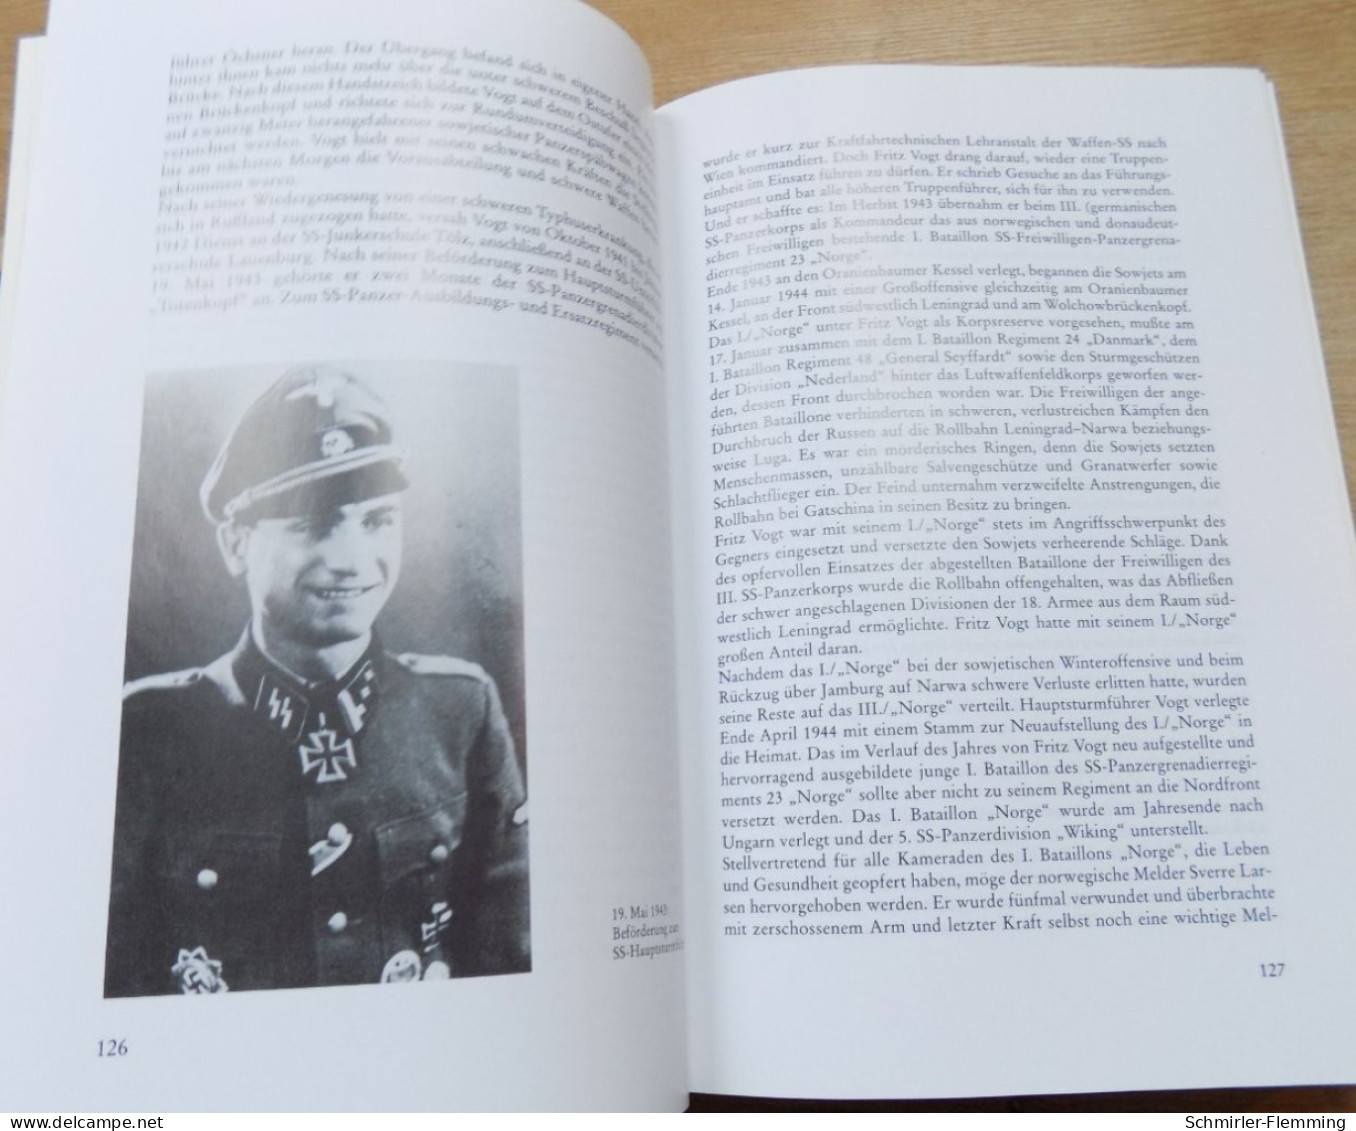 Spezialkatalog Die Ritterkreuzträger Des Eisernen Kreuzes 1939-1945 Der Waffen SS, S/w, 1008 Seiten! NEU - Alemania